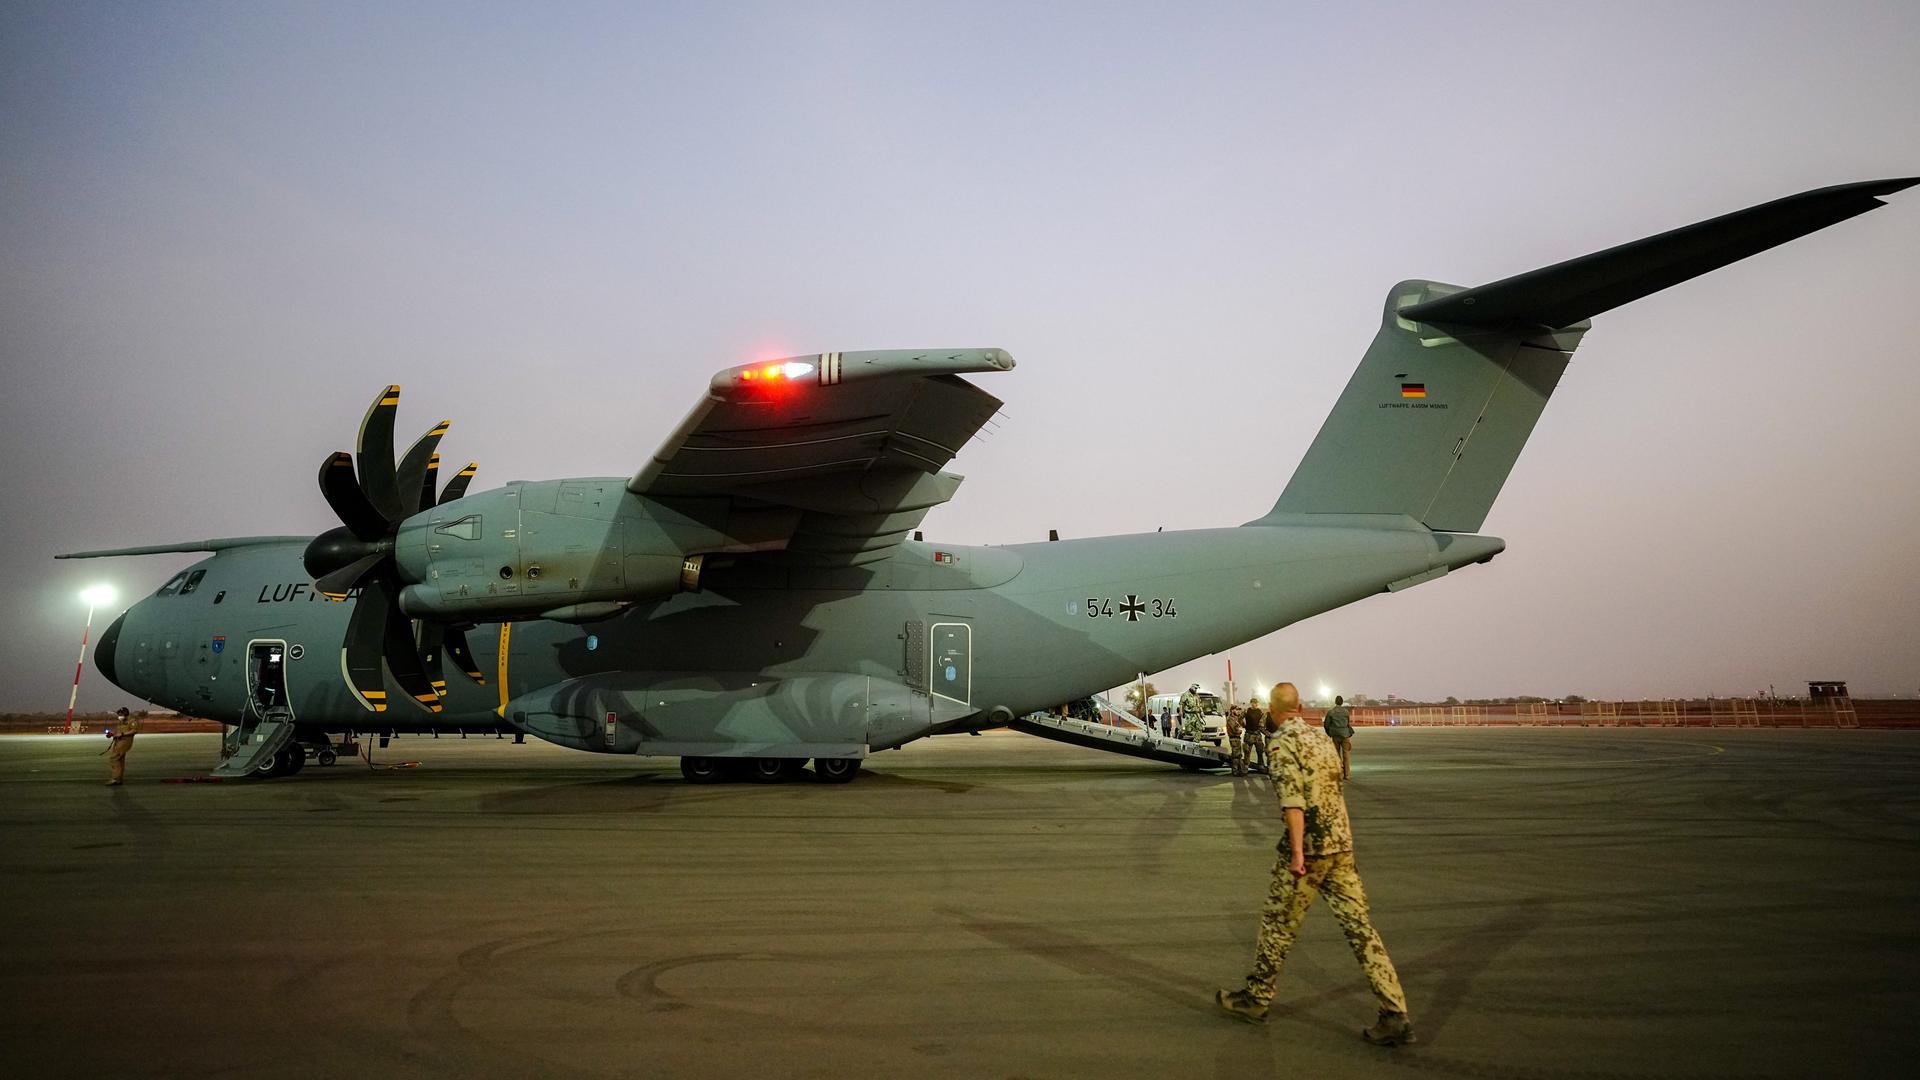 Ein Airbus A400M in der Lackierung der Luftwaffe steht bei Abendlicht auf einem Rollfeld; ein Soldat in khaki-farbener Camouflage läuft auf das Flugzeug zu. Aufnahme vom 09.04.2022. 